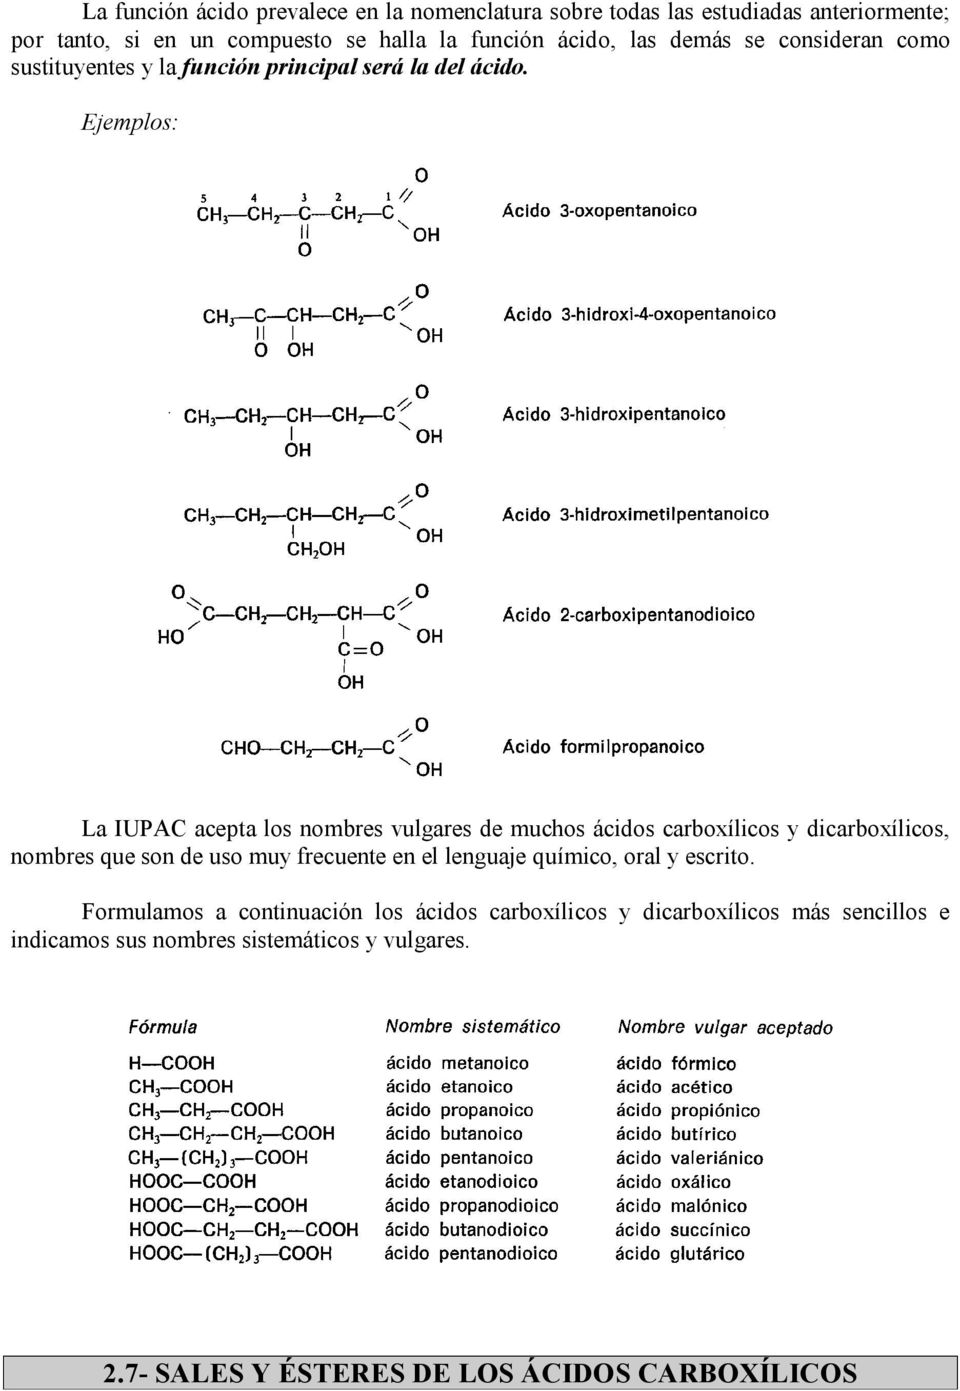 La IUPAC acepta los nombres vulgares de muchos ácidos carboxílicos y dicarboxílicos, nombres que son de uso muy frecuente en el lenguaje